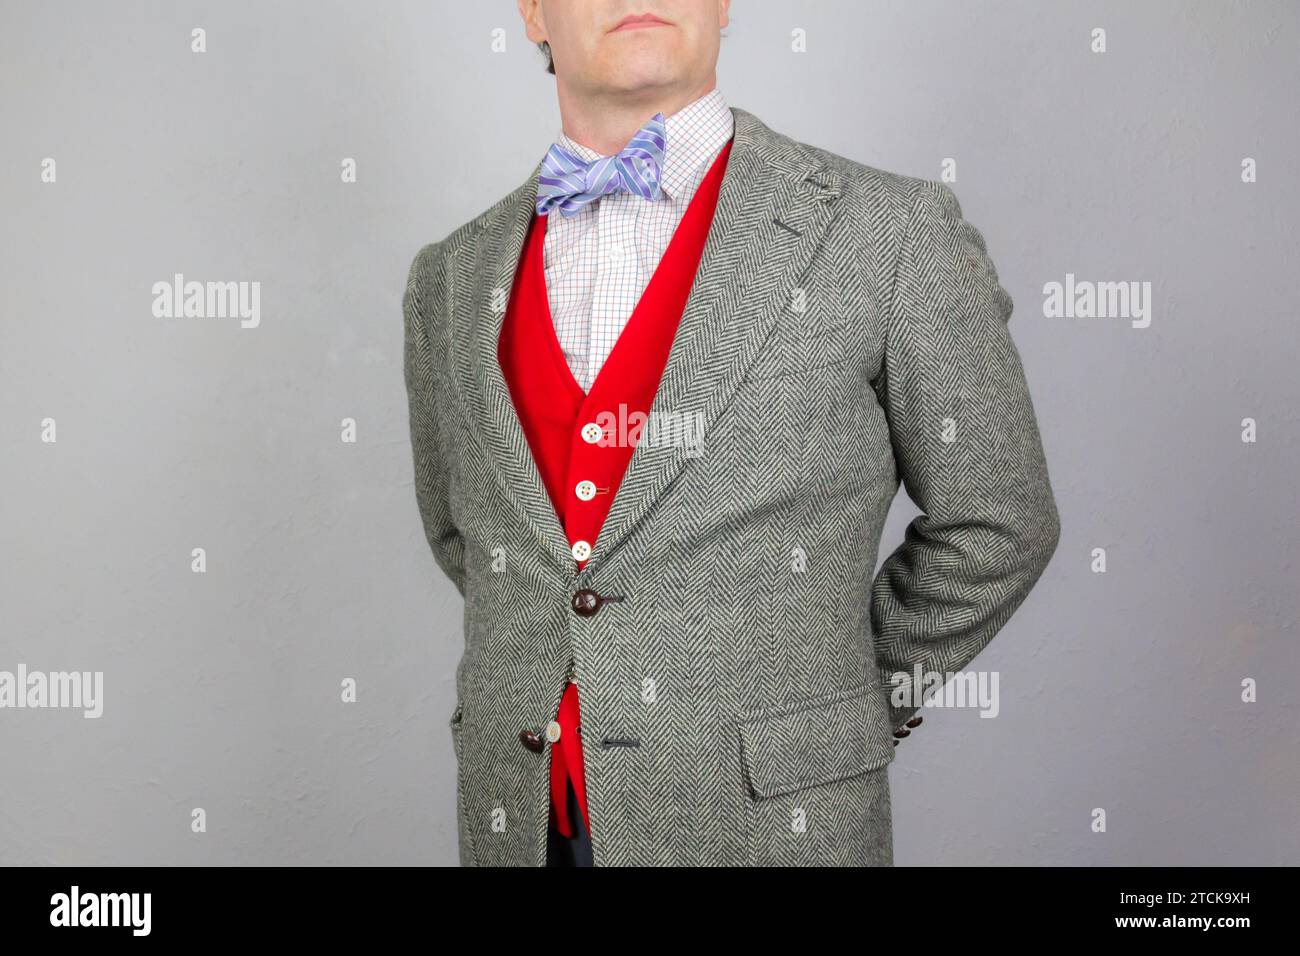 Portrait d'élégant gentleman en tweed veste et gilet ou gilet rouge vif debout avec les mains derrière le dos. Style vintage et mode rétro. Banque D'Images